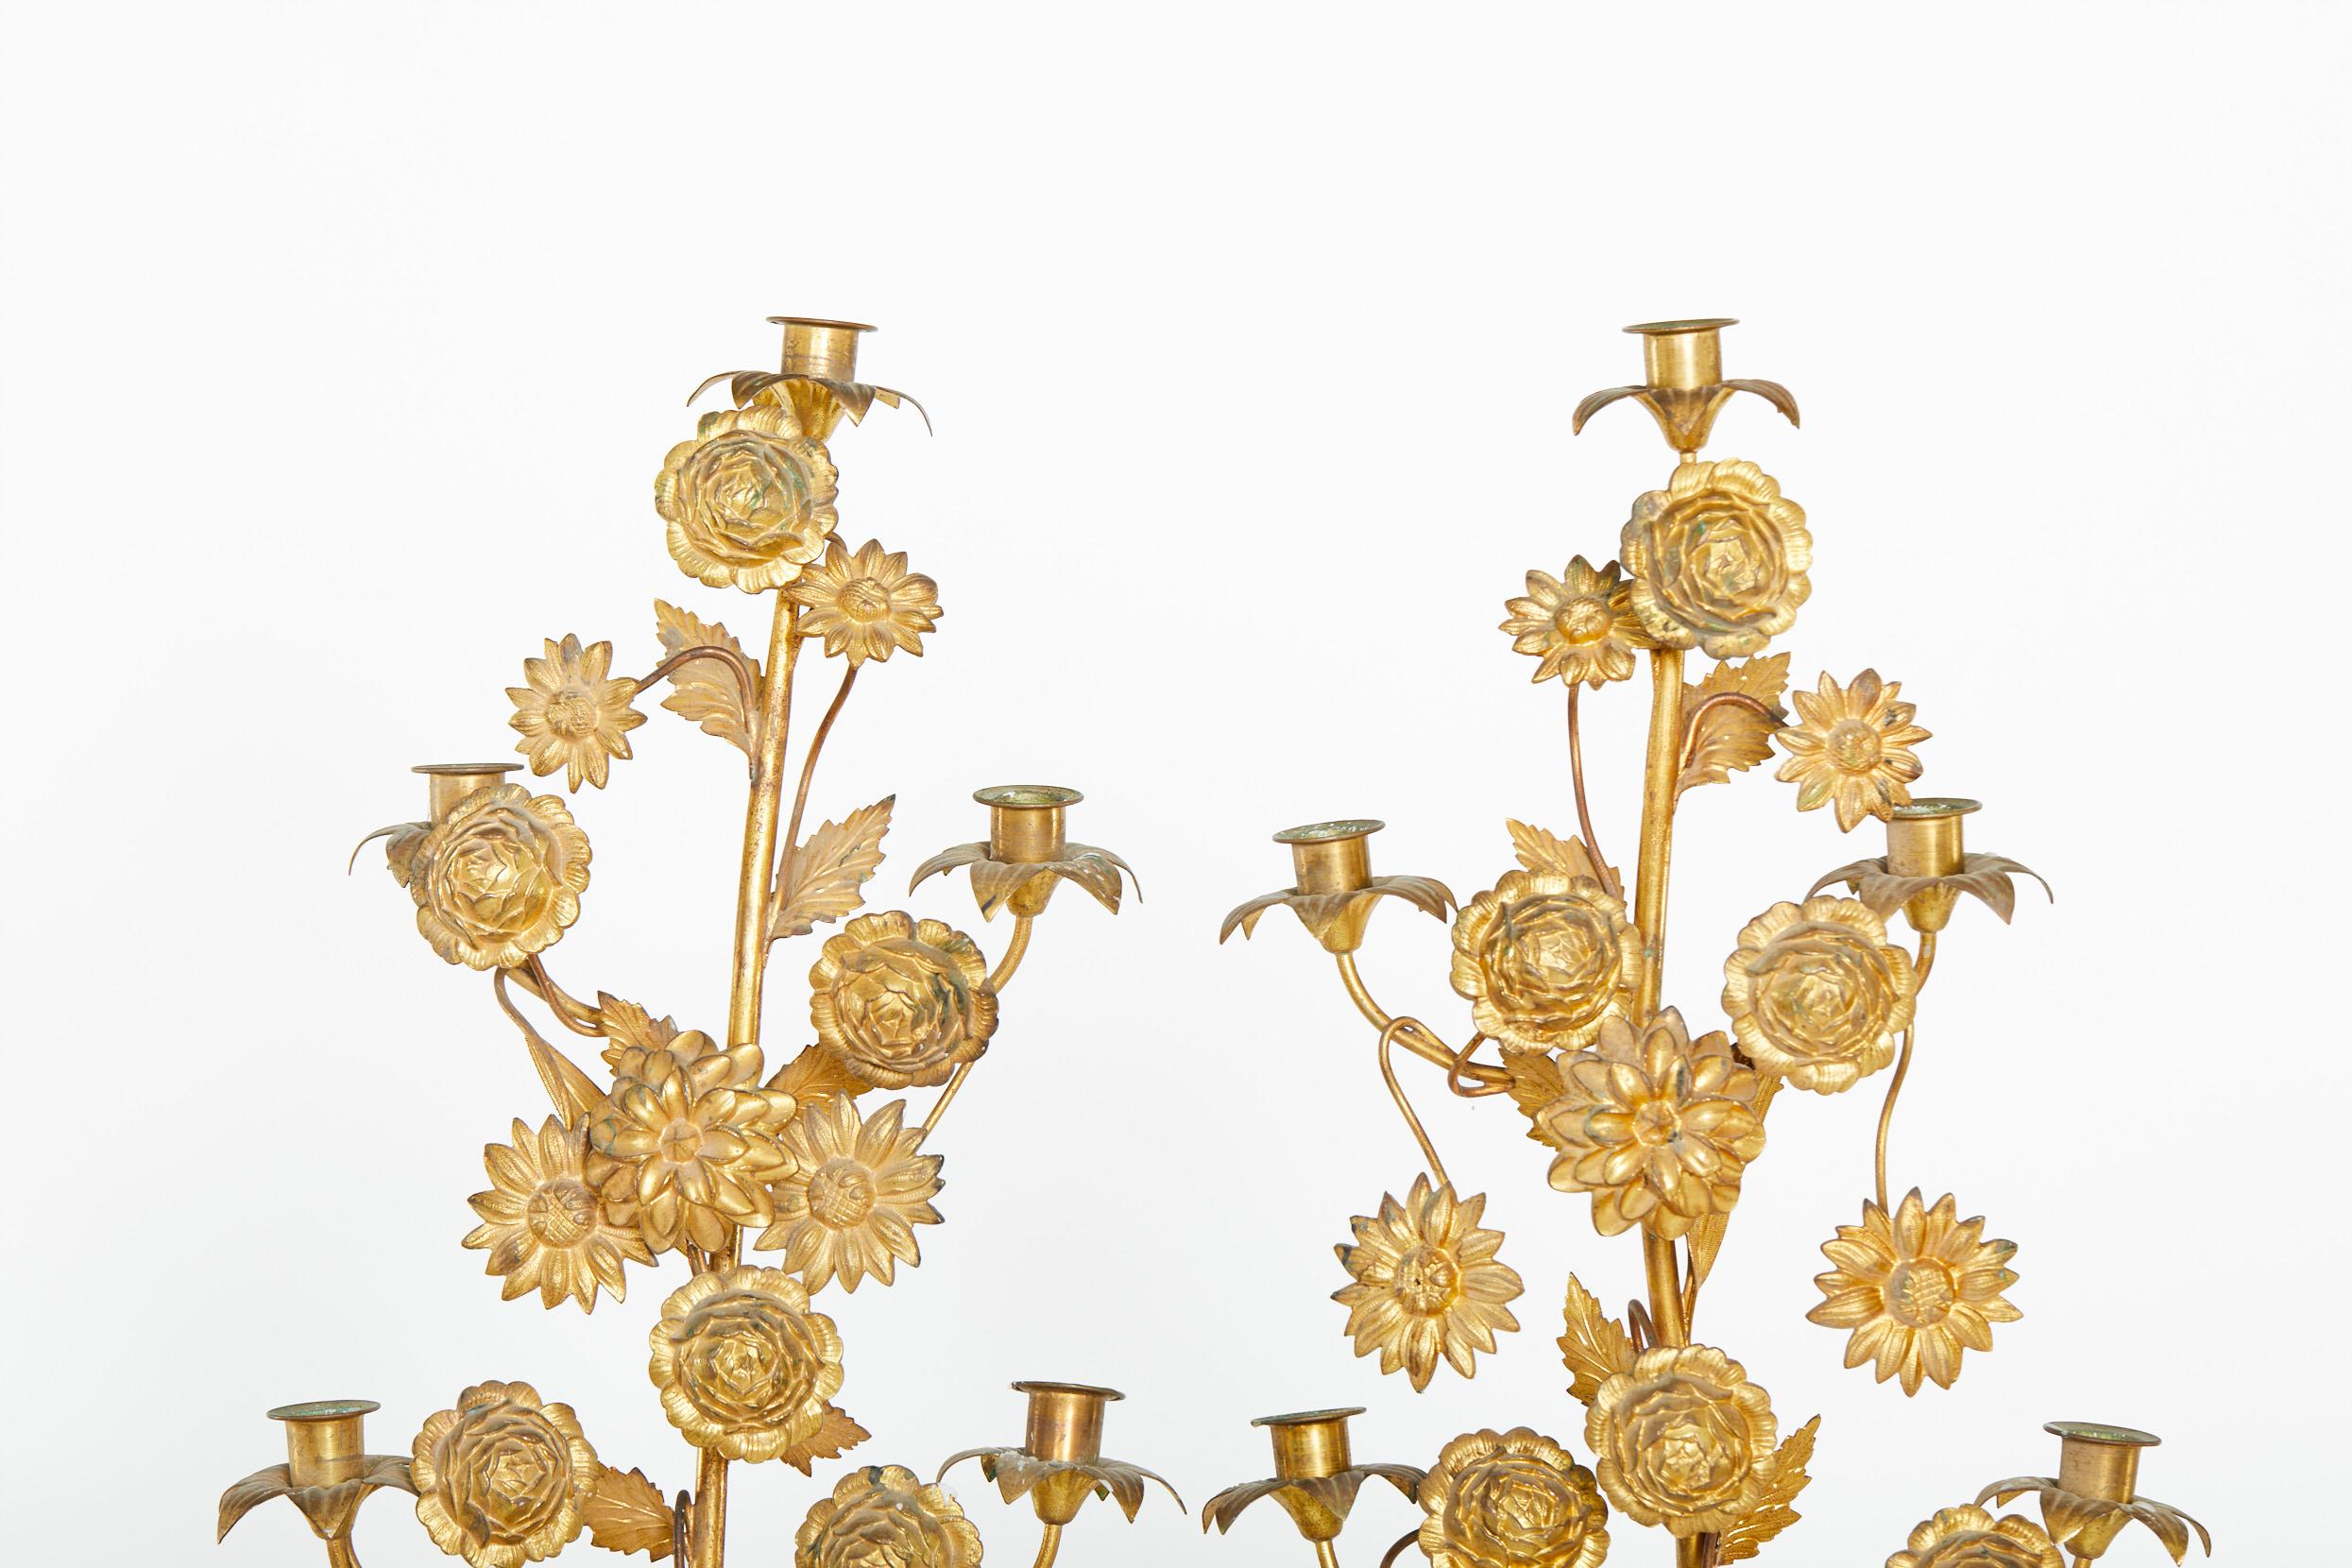 Chandeliers / chandeliers en laiton doré italien du milieu du 19ème siècle à sept bras avec des détails de fleurs extérieures. Chaque bougeoir est en excellent état. Usure mineure correspondant à l'âge et à l'utilisation. Chaque pièce mesure environ